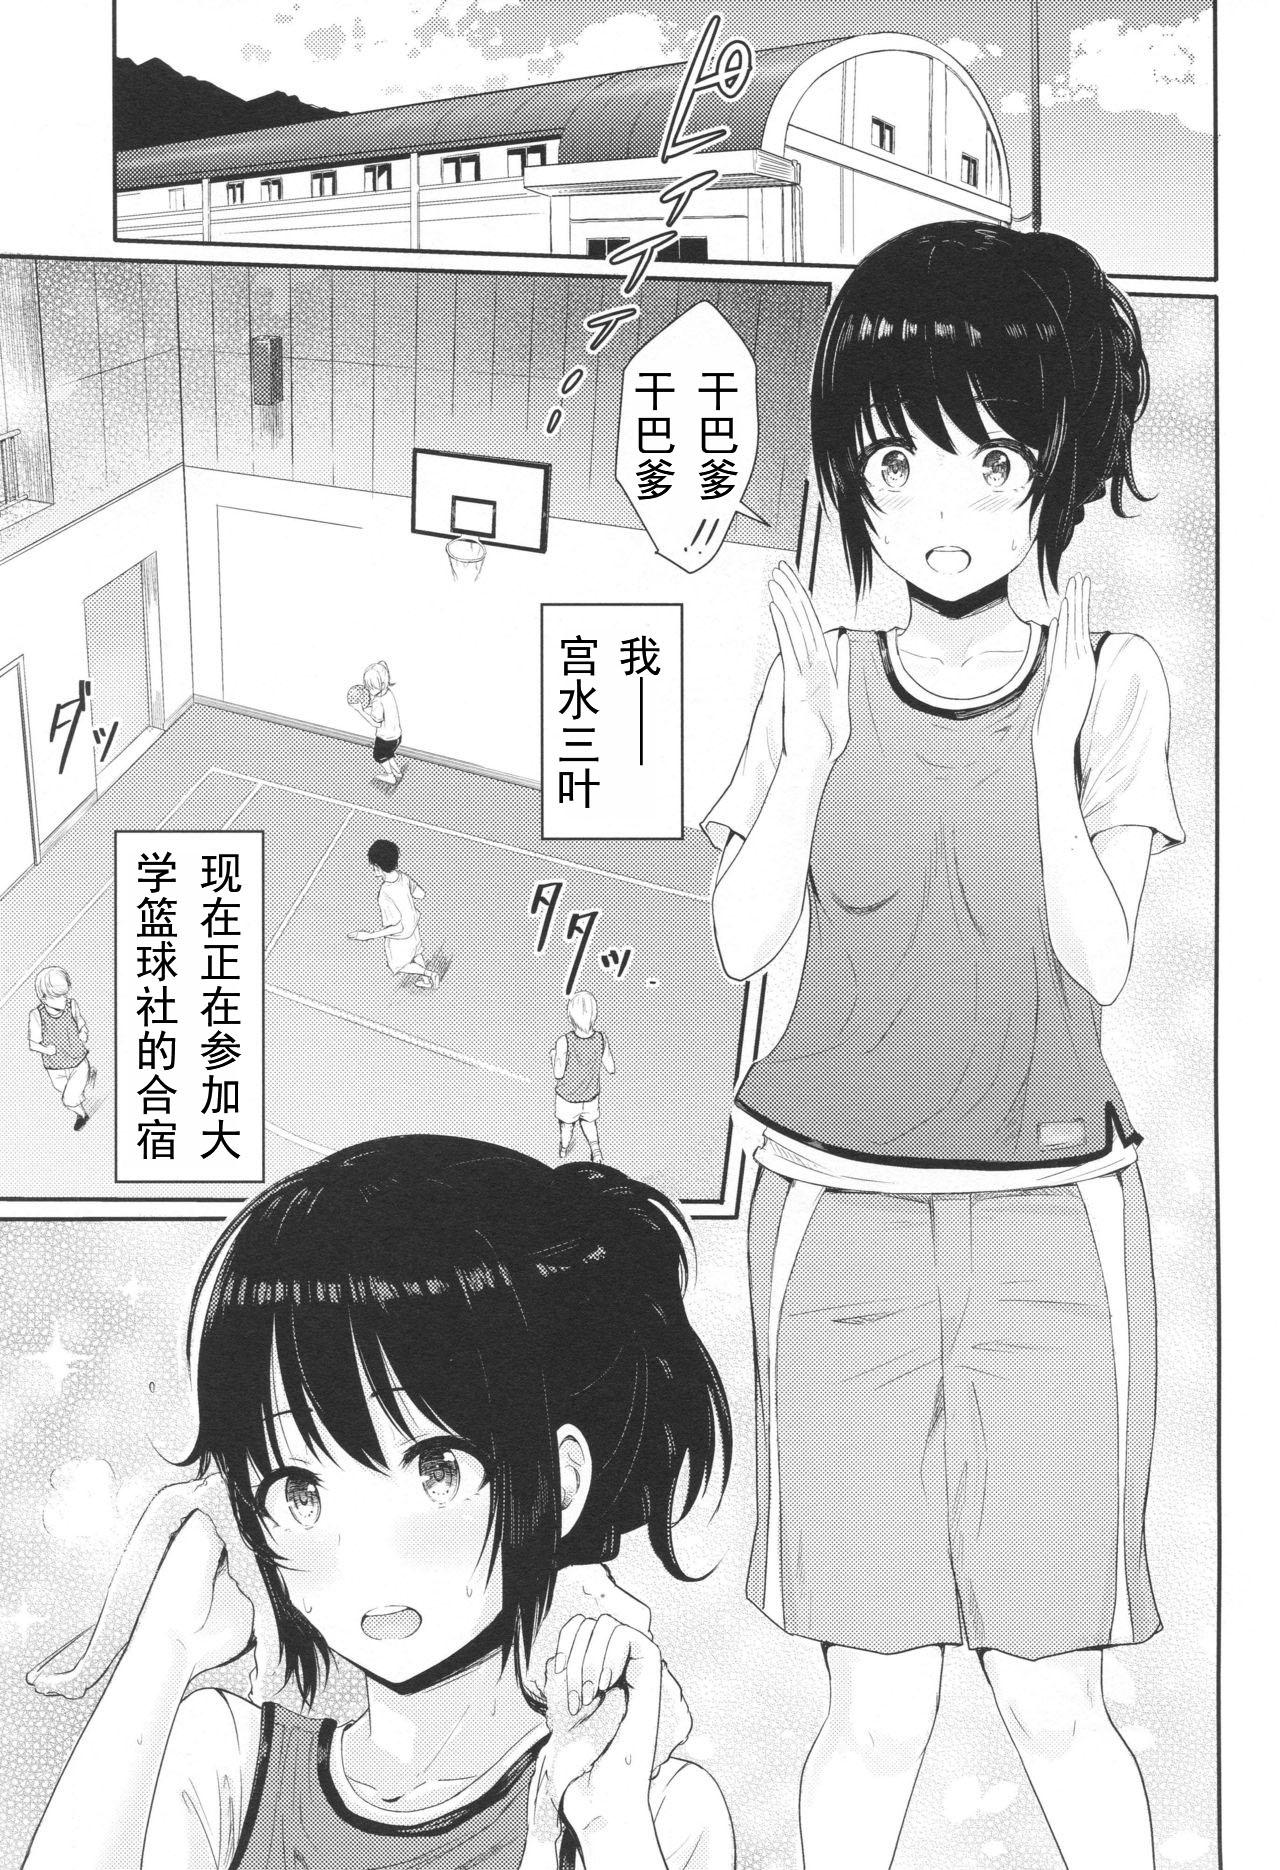 Heels Mitsuha - Kimi no na wa. Punishment - Page 2